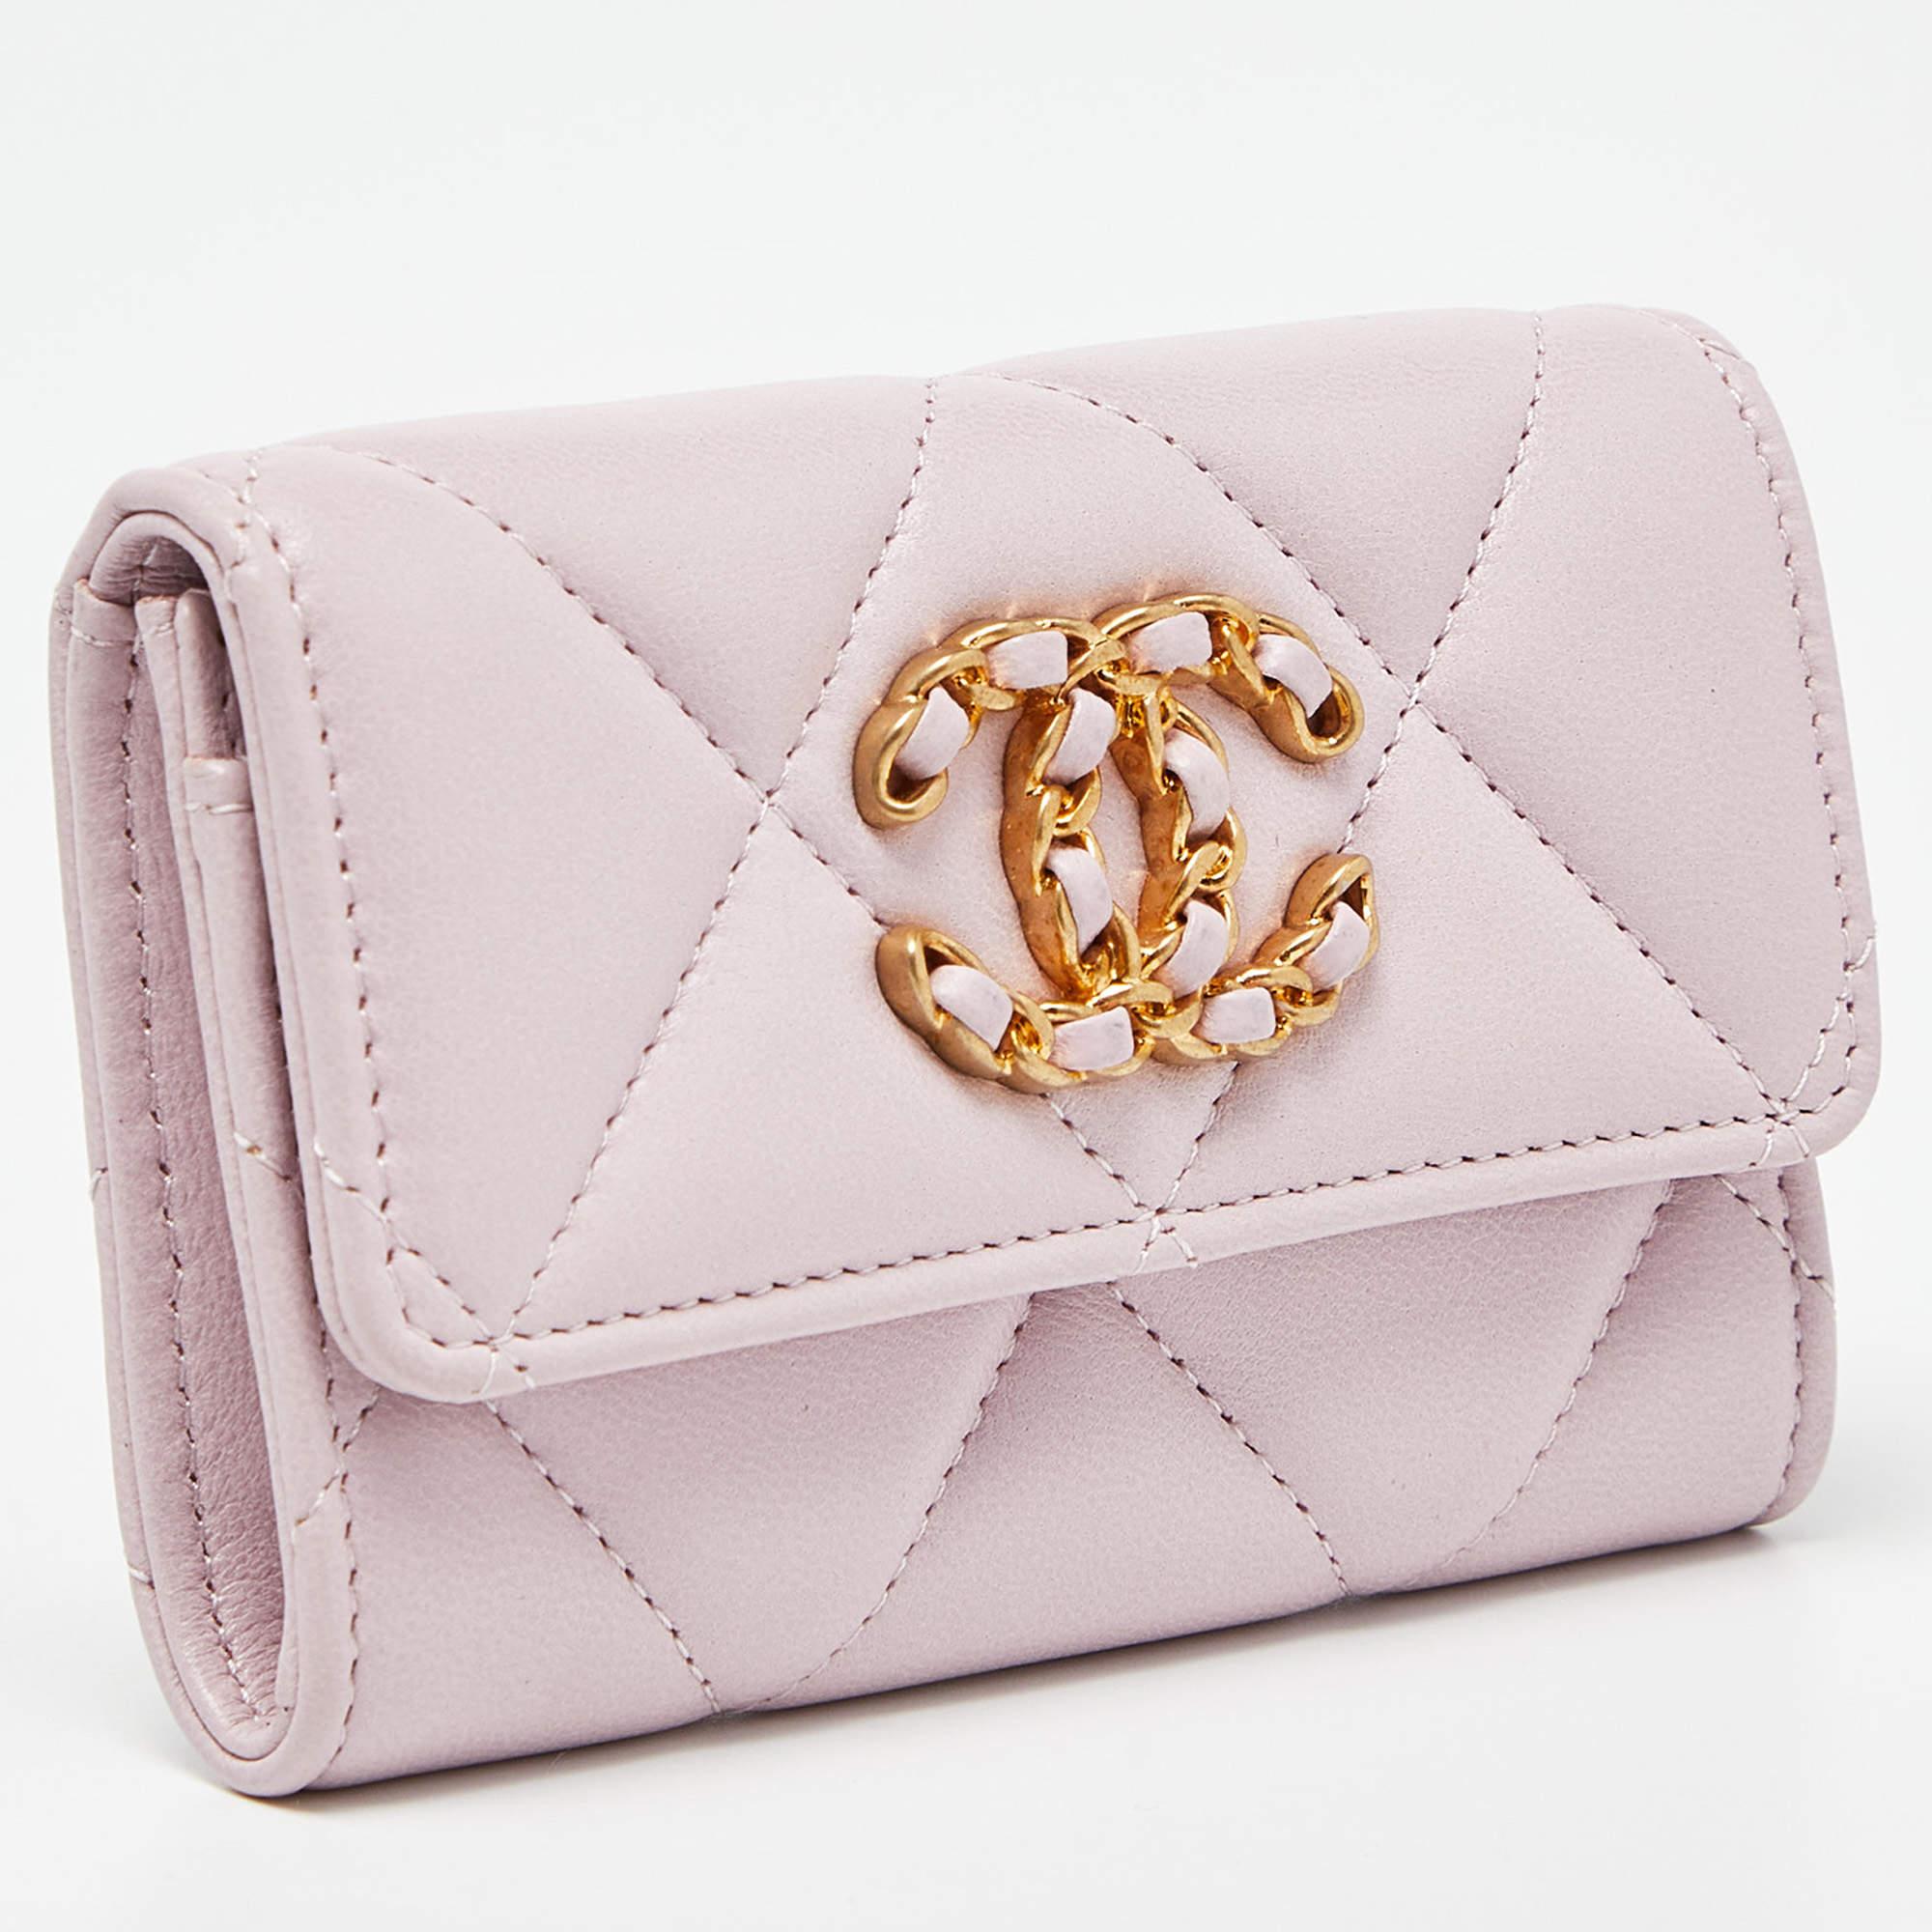 Le porte-cartes Chanel 19 est un accessoire luxueux fabriqué en cuir souple et matelassé dans une superbe nuance de rose. Il arbore le logo emblématique de Chanel sur le devant et offre suffisamment d'espace pour organiser les cartes tout en faisant